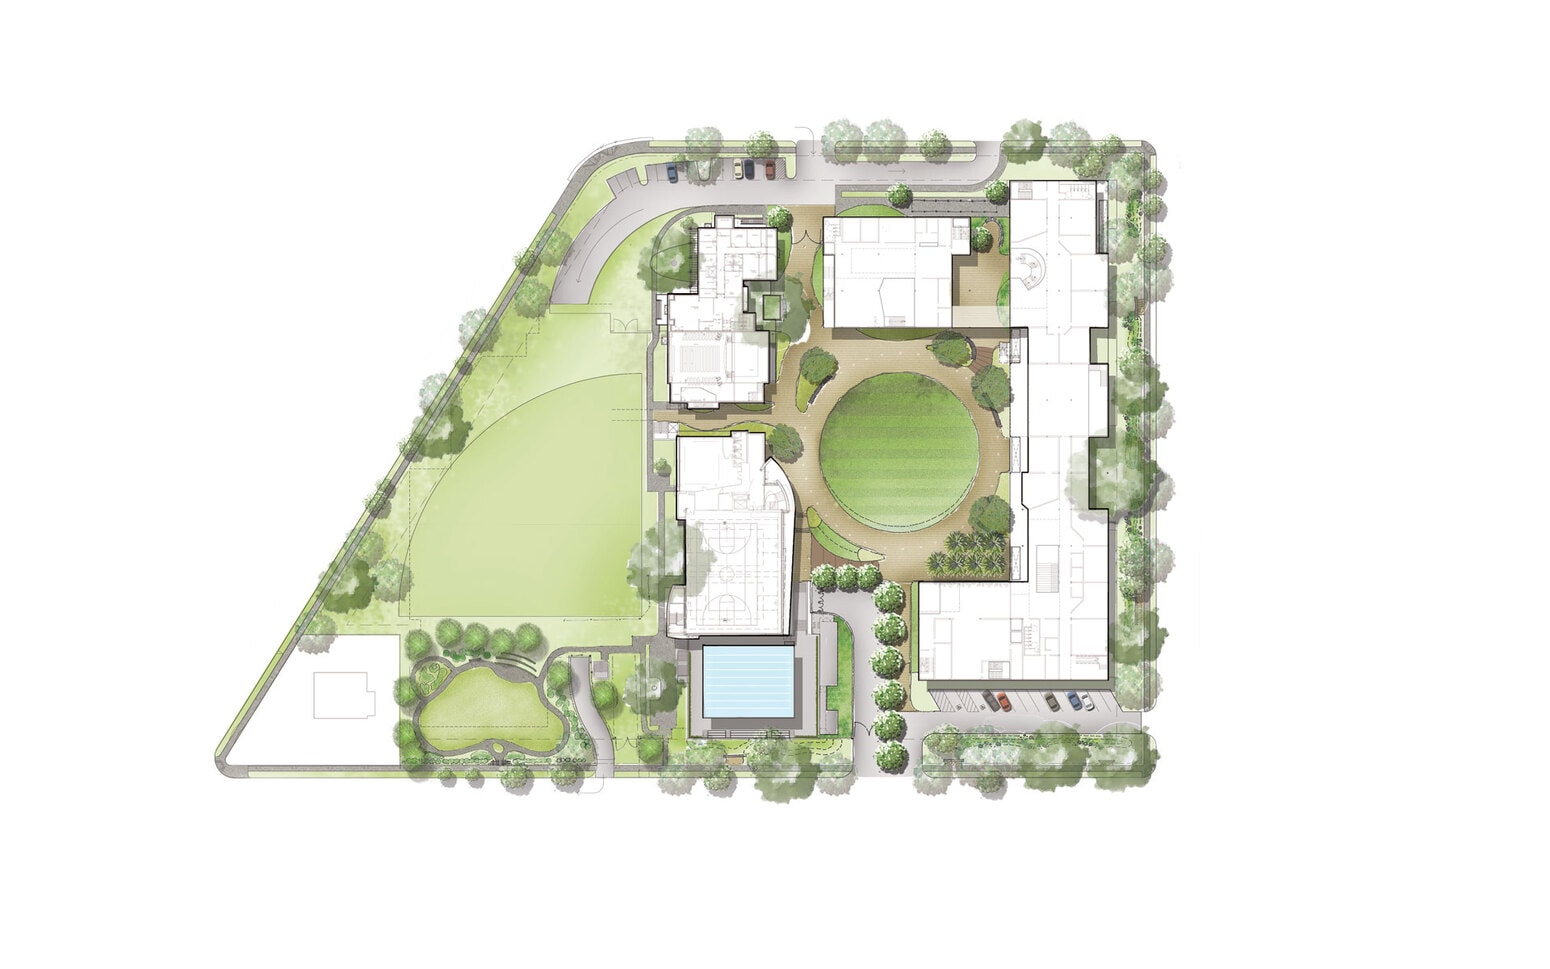 Renders site plan of school site